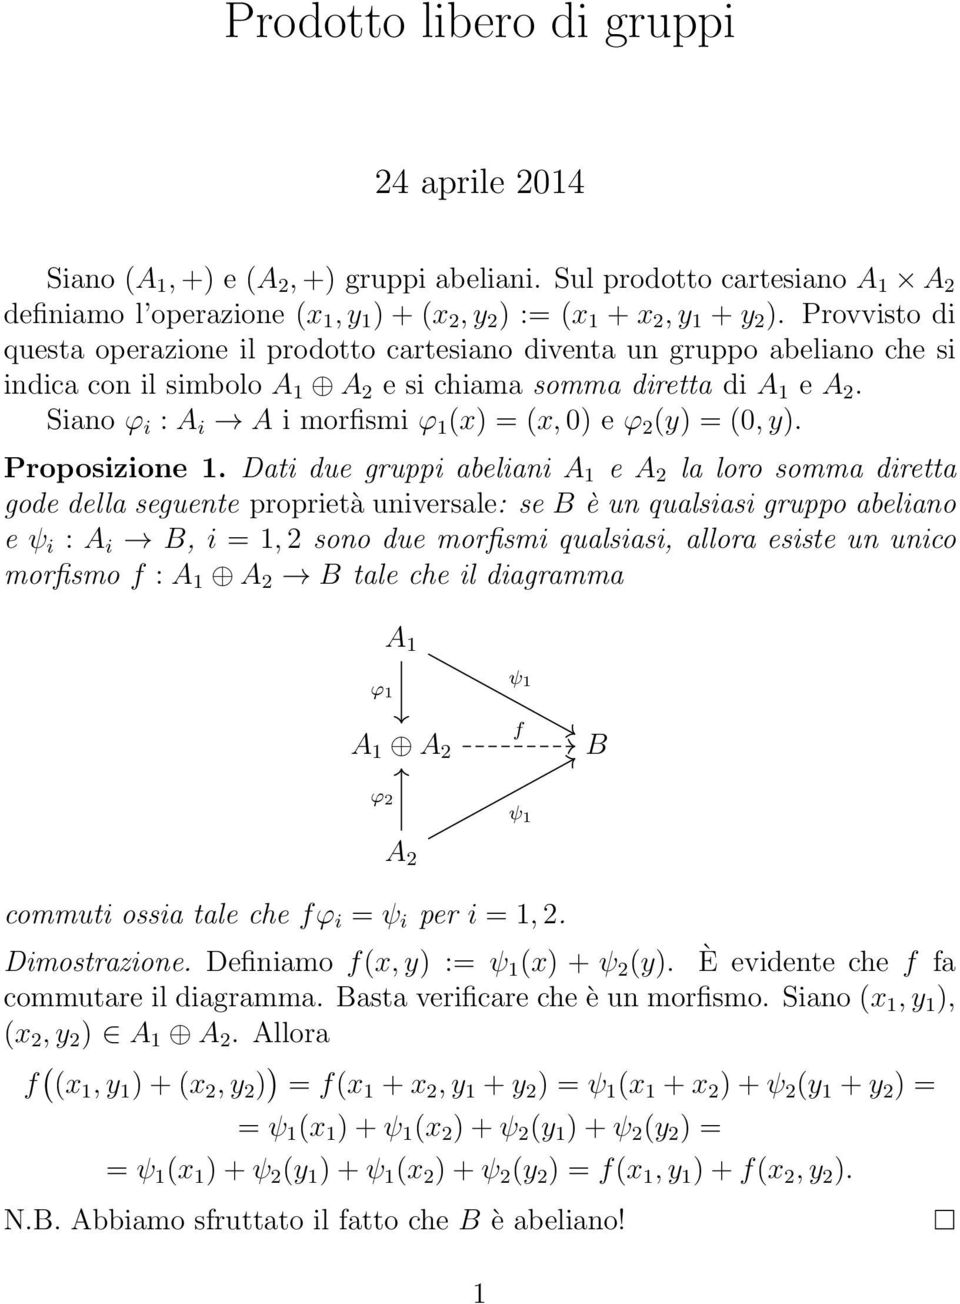 Siano ϕ i : A i A i morfismi (x) = (x, 0) e (y) = (0, y). Proposizione 1.